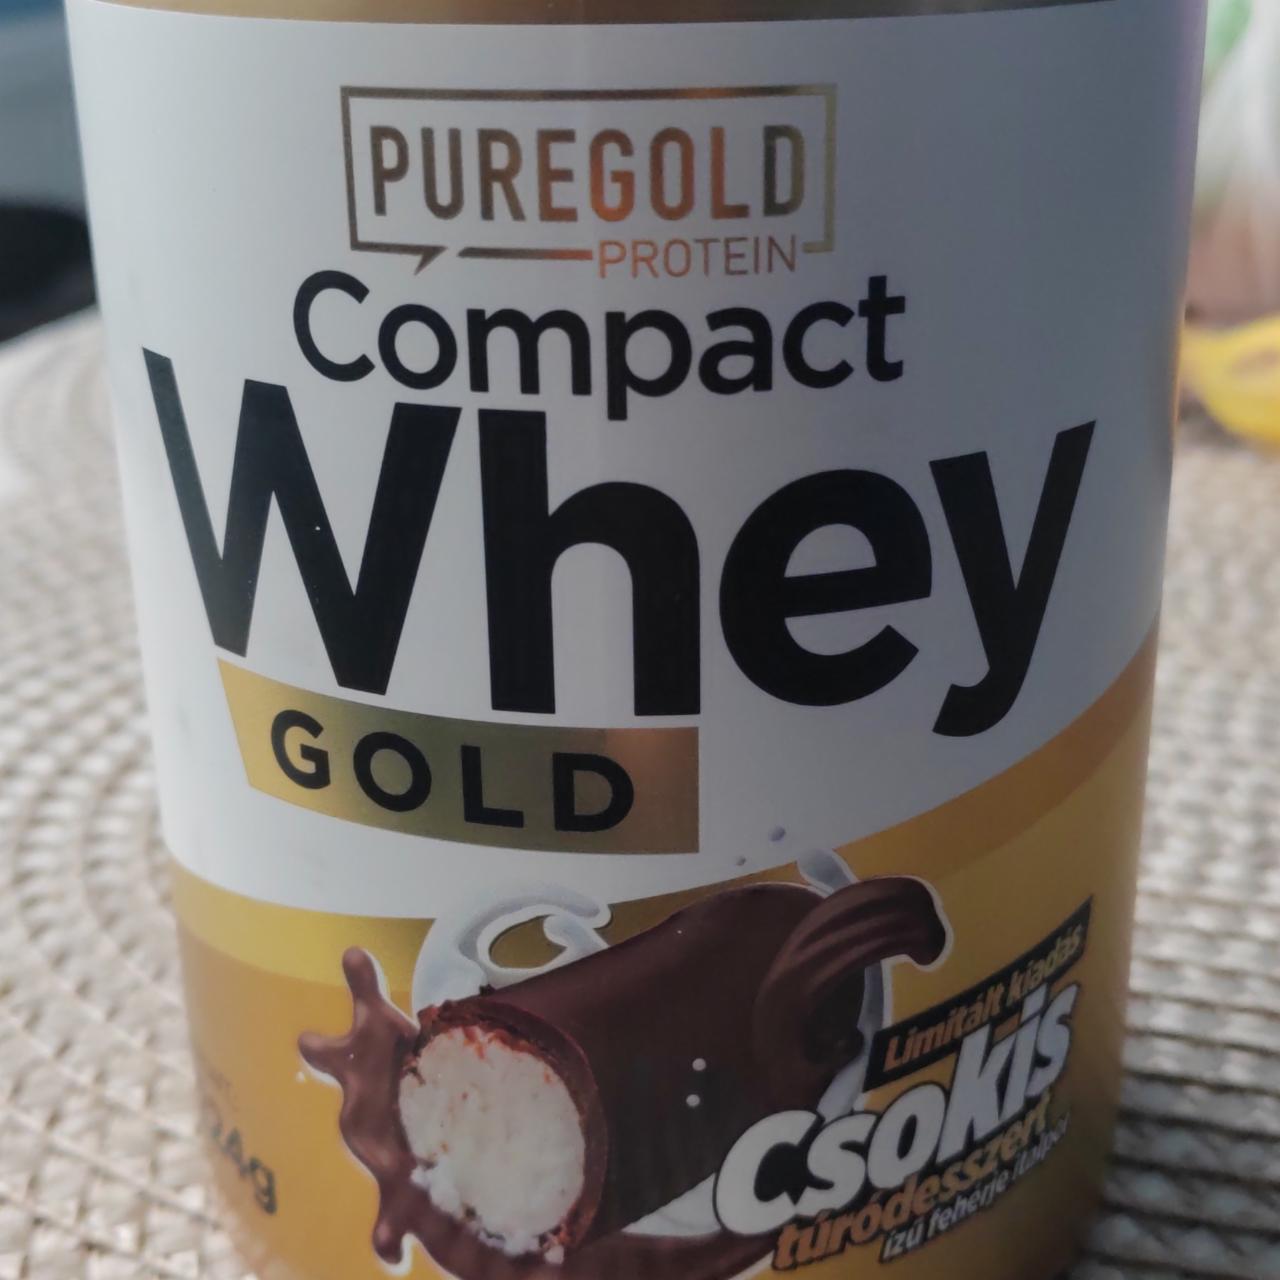 Képek - Compact whey gold Csokis túródesszert Puregold